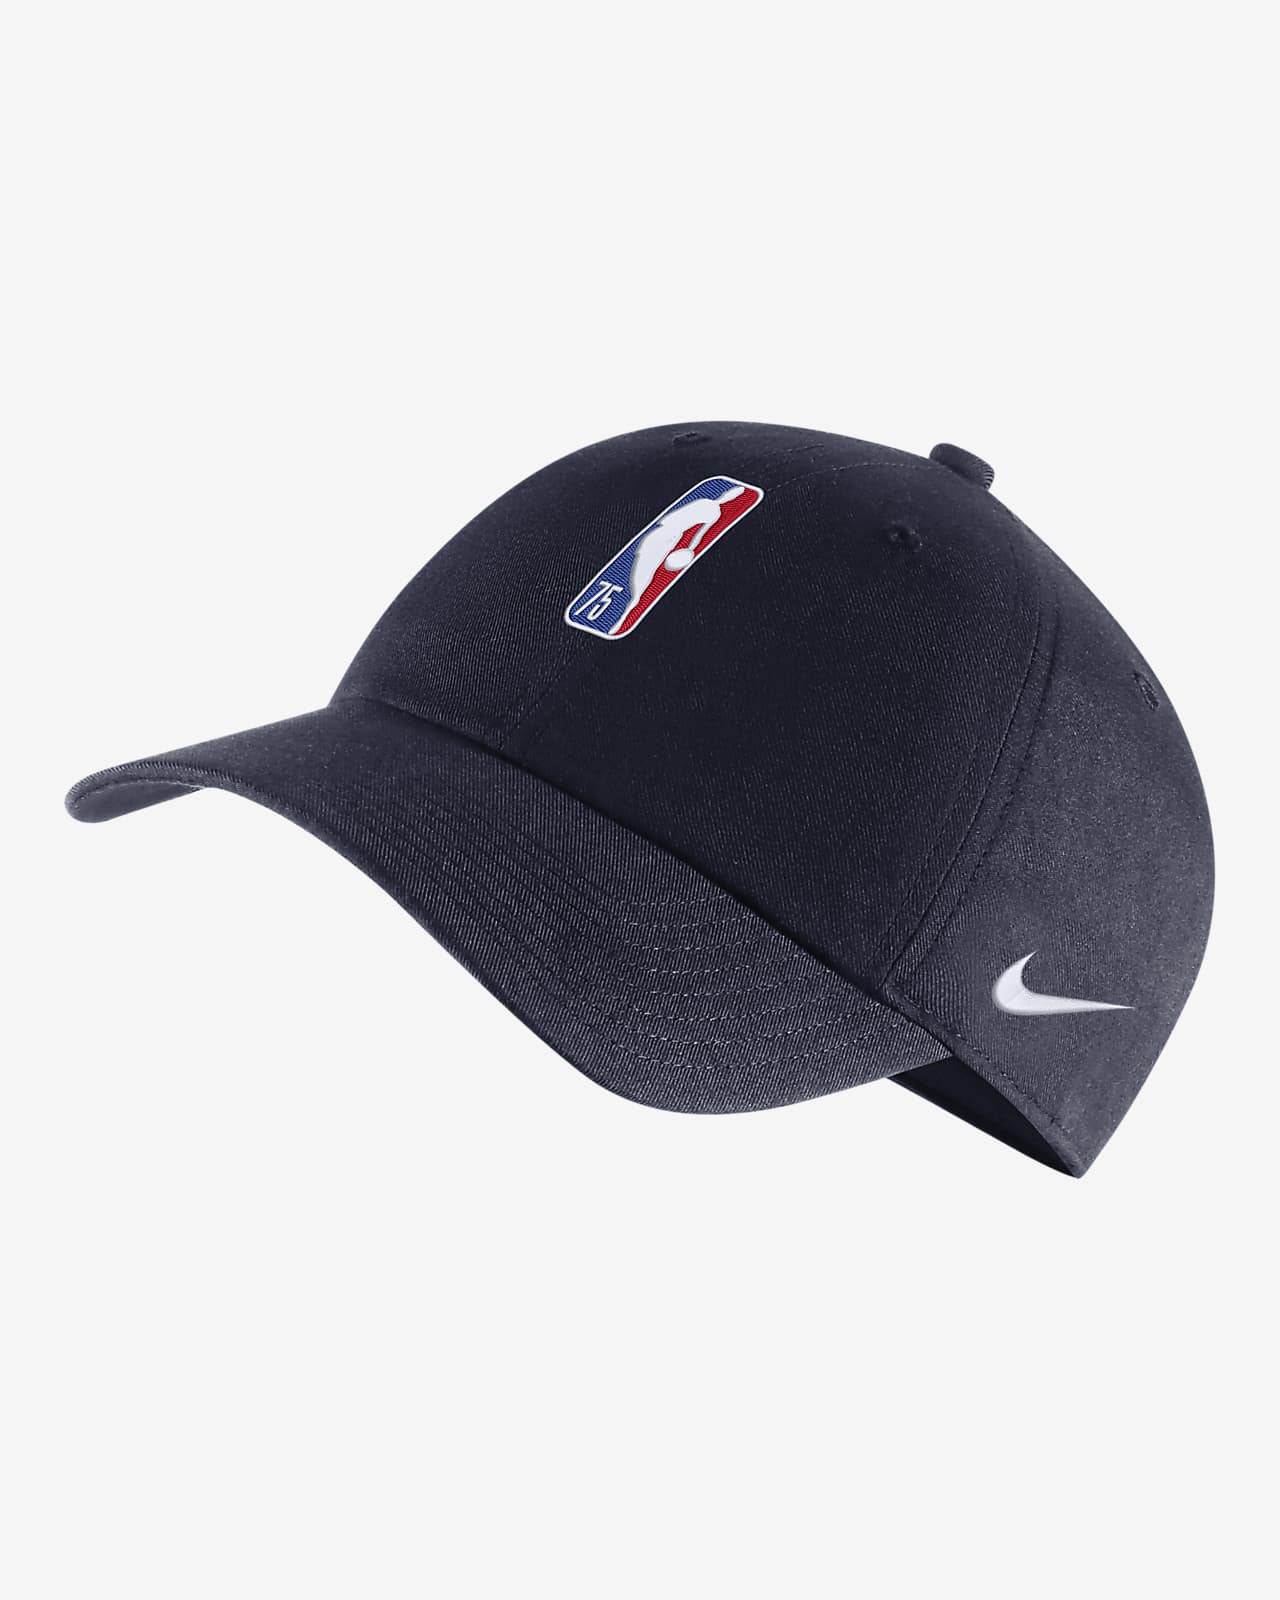 Team 31 Heritage86 Nike NBA Hat